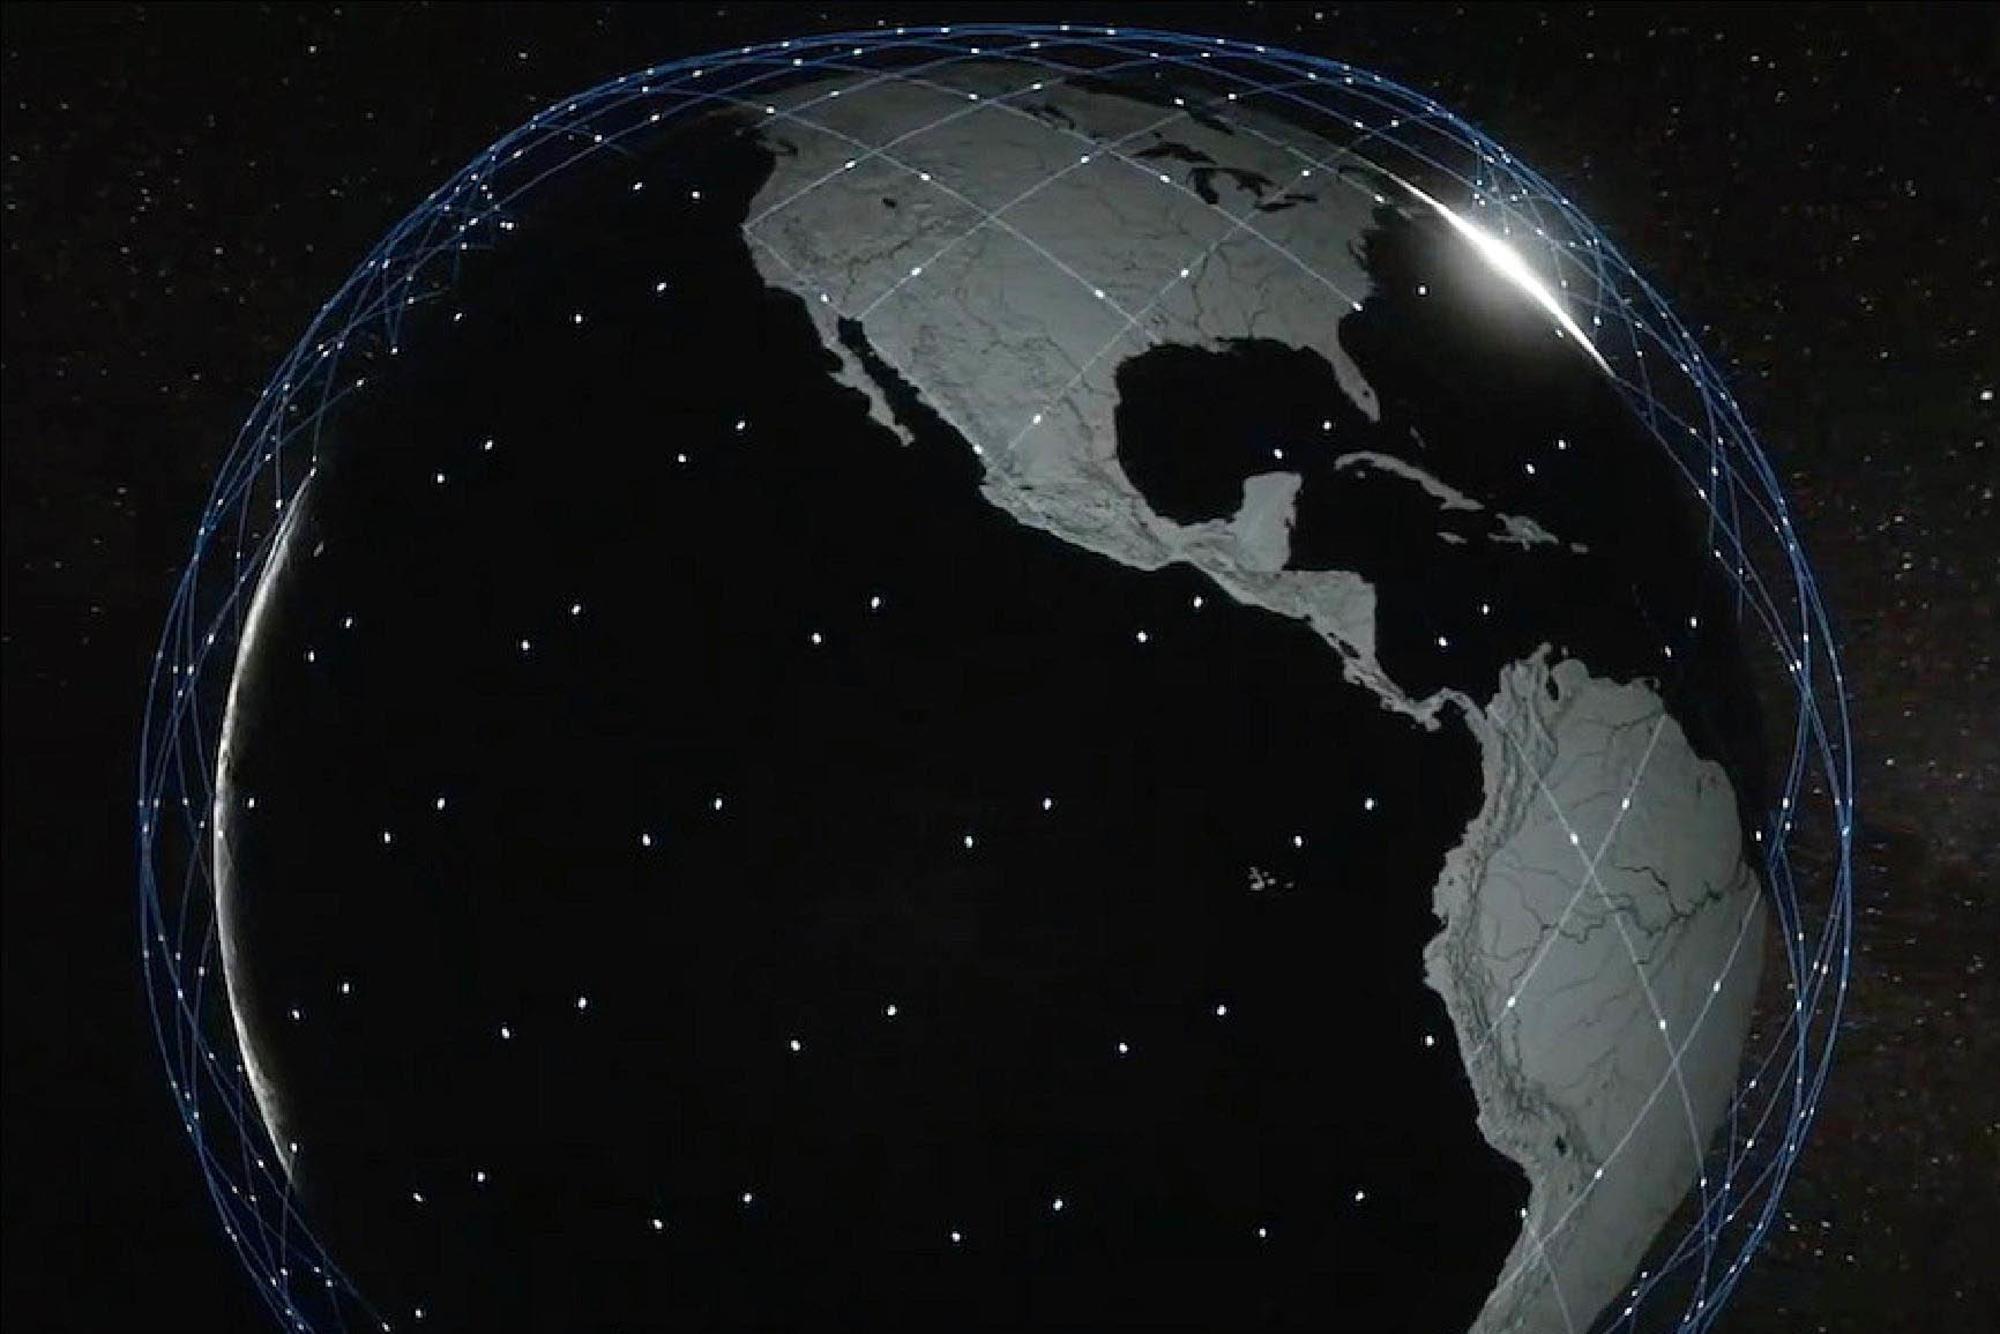 Starlink Satellite Constellation of SpaceX